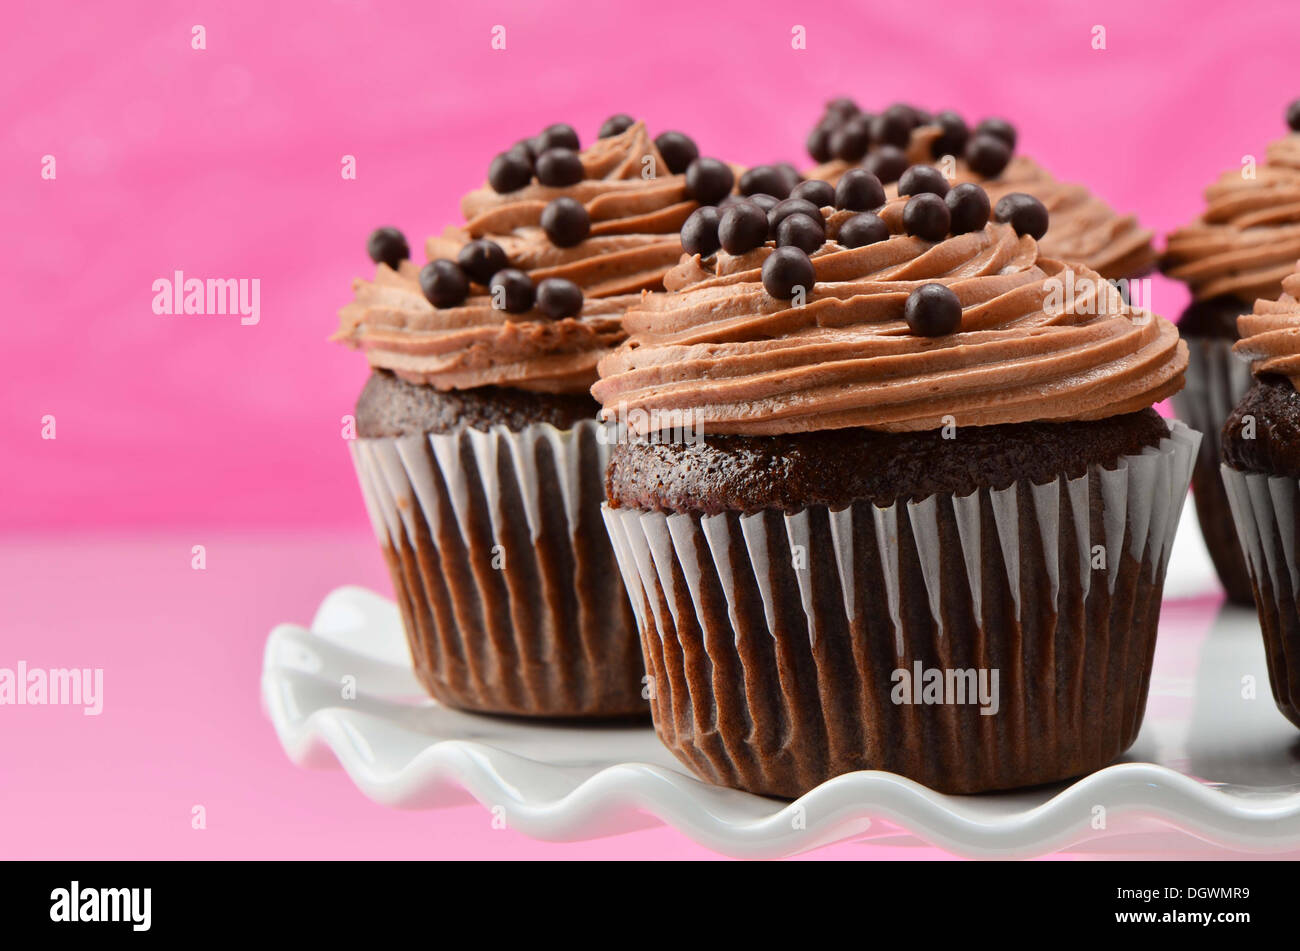 Gourmet-Schokolade Cupcakes mit Schokoladenglasur chiffon und Schokokugeln auf weißen Kuchen stehen mit einem tief rosa Hintergrund Stockfoto